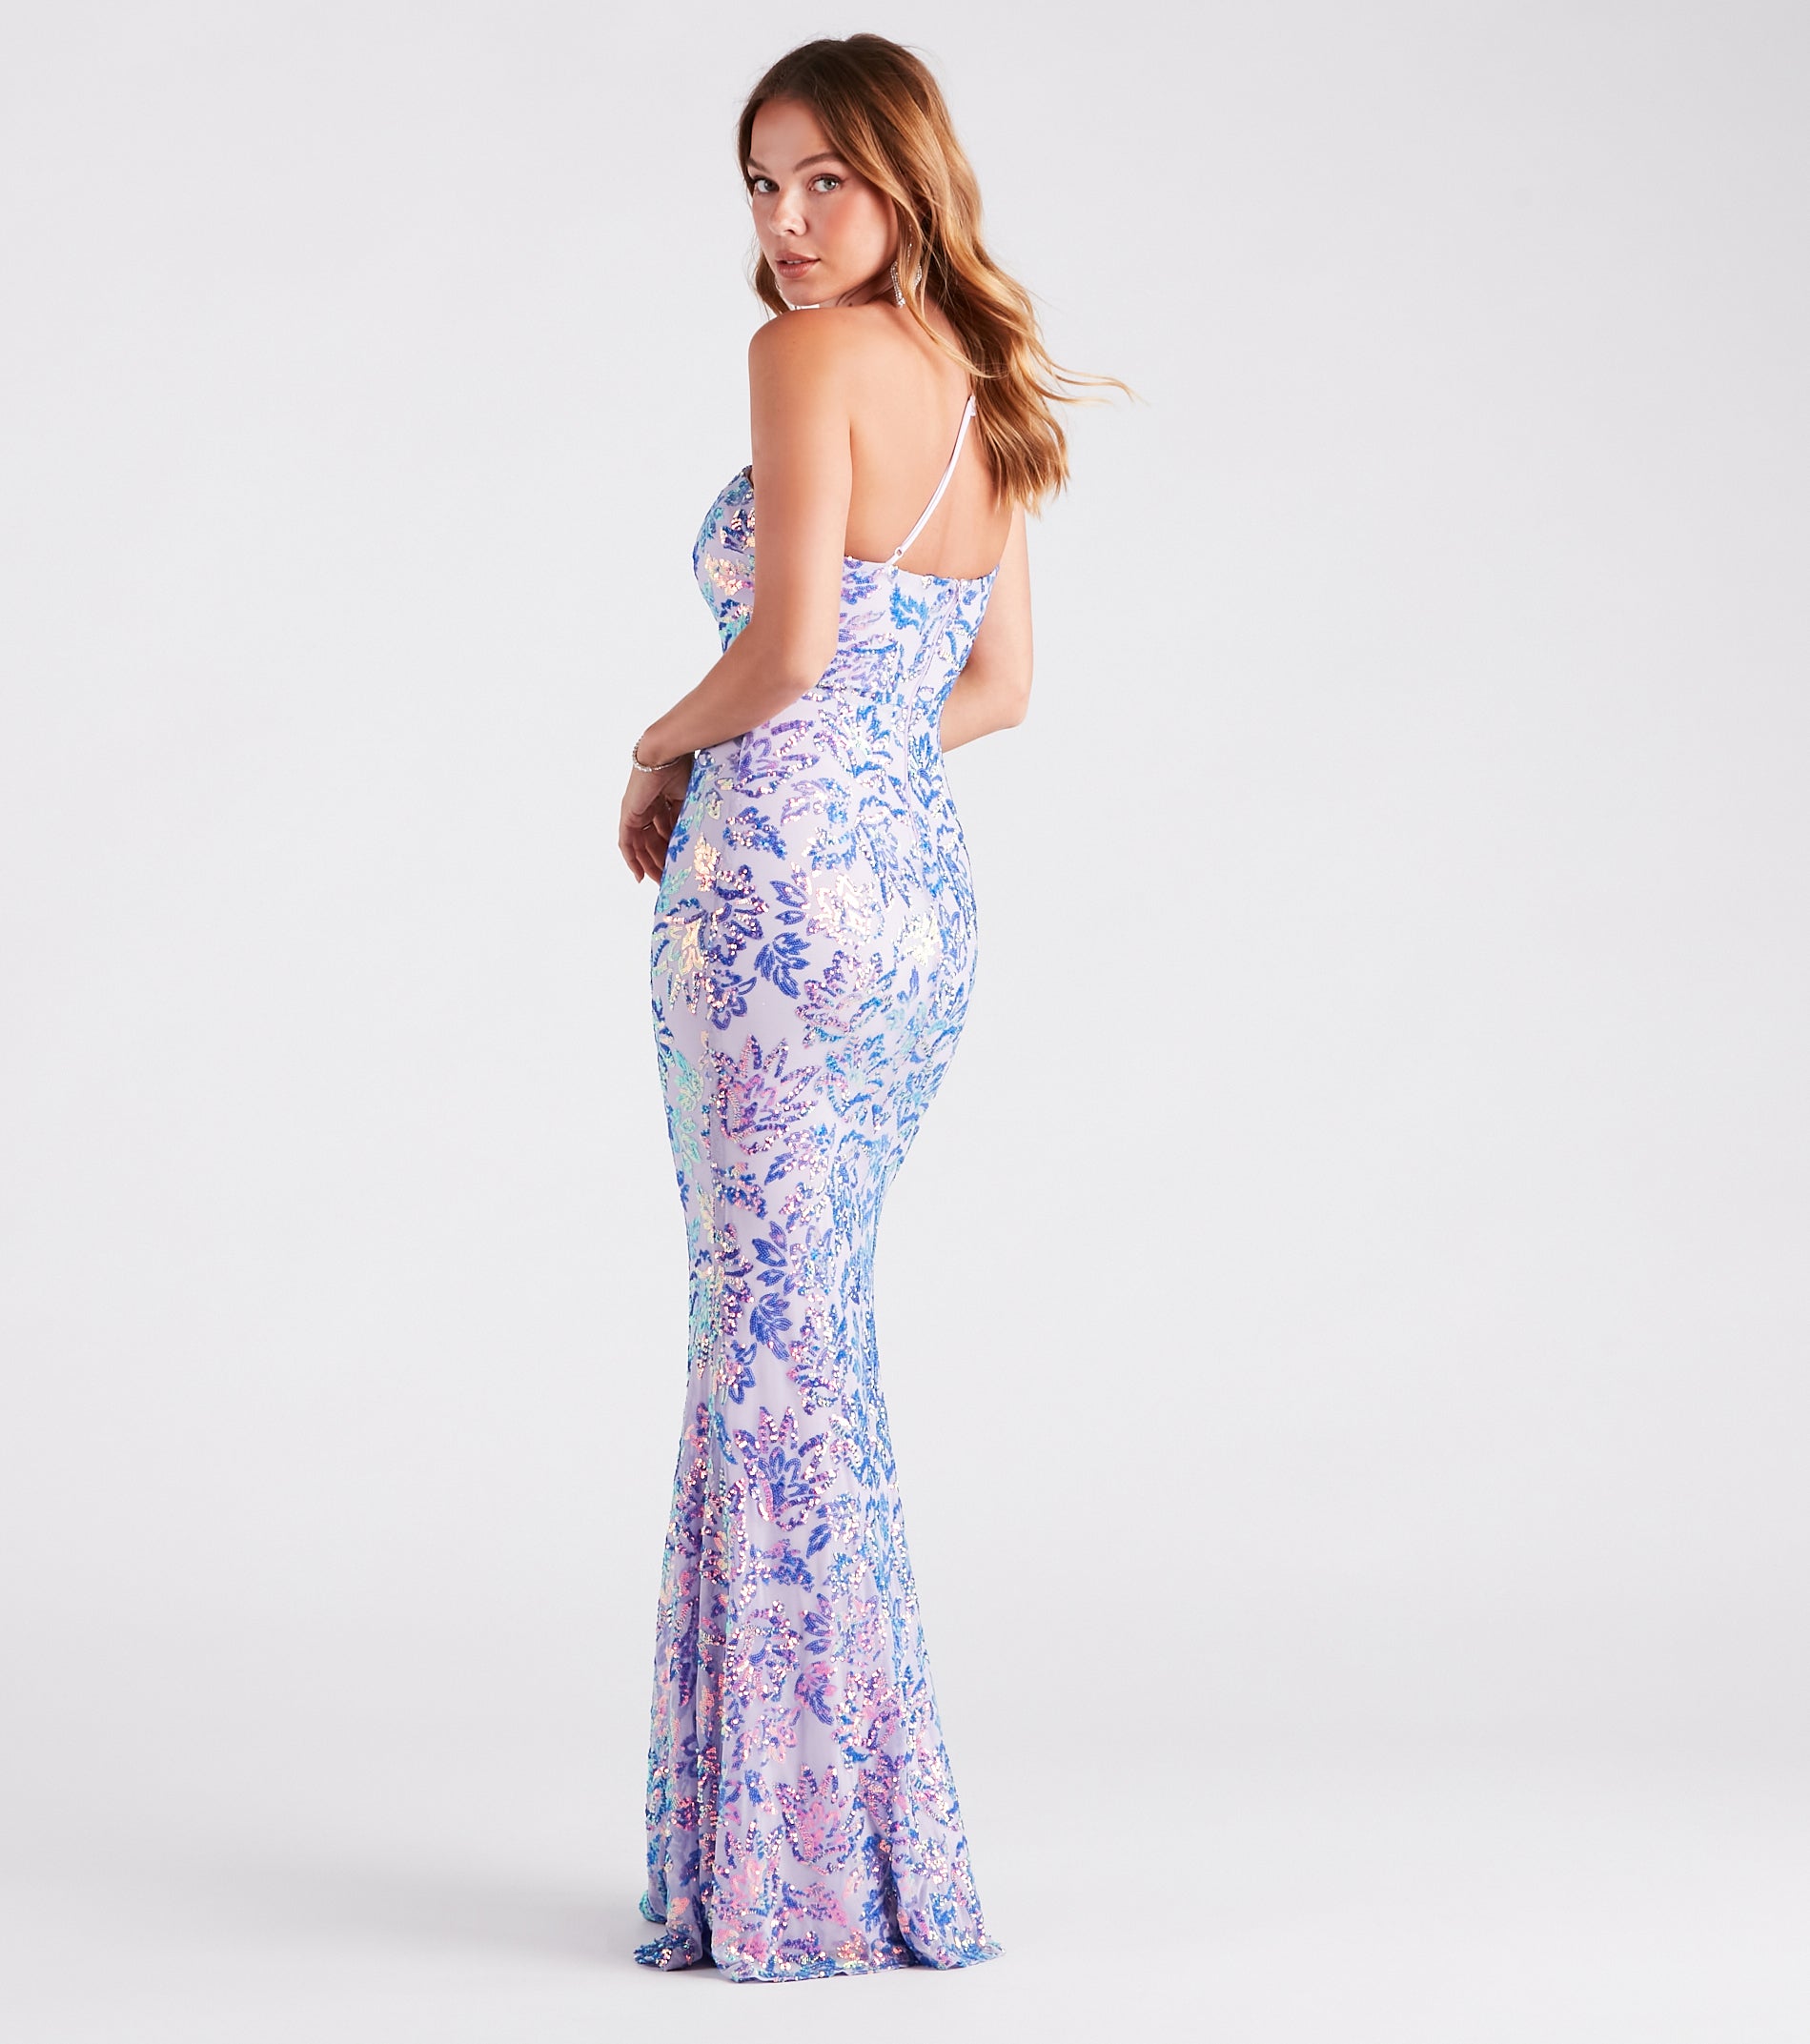 Meredith One-Shoulder Sequin Formal Dress & Windsor